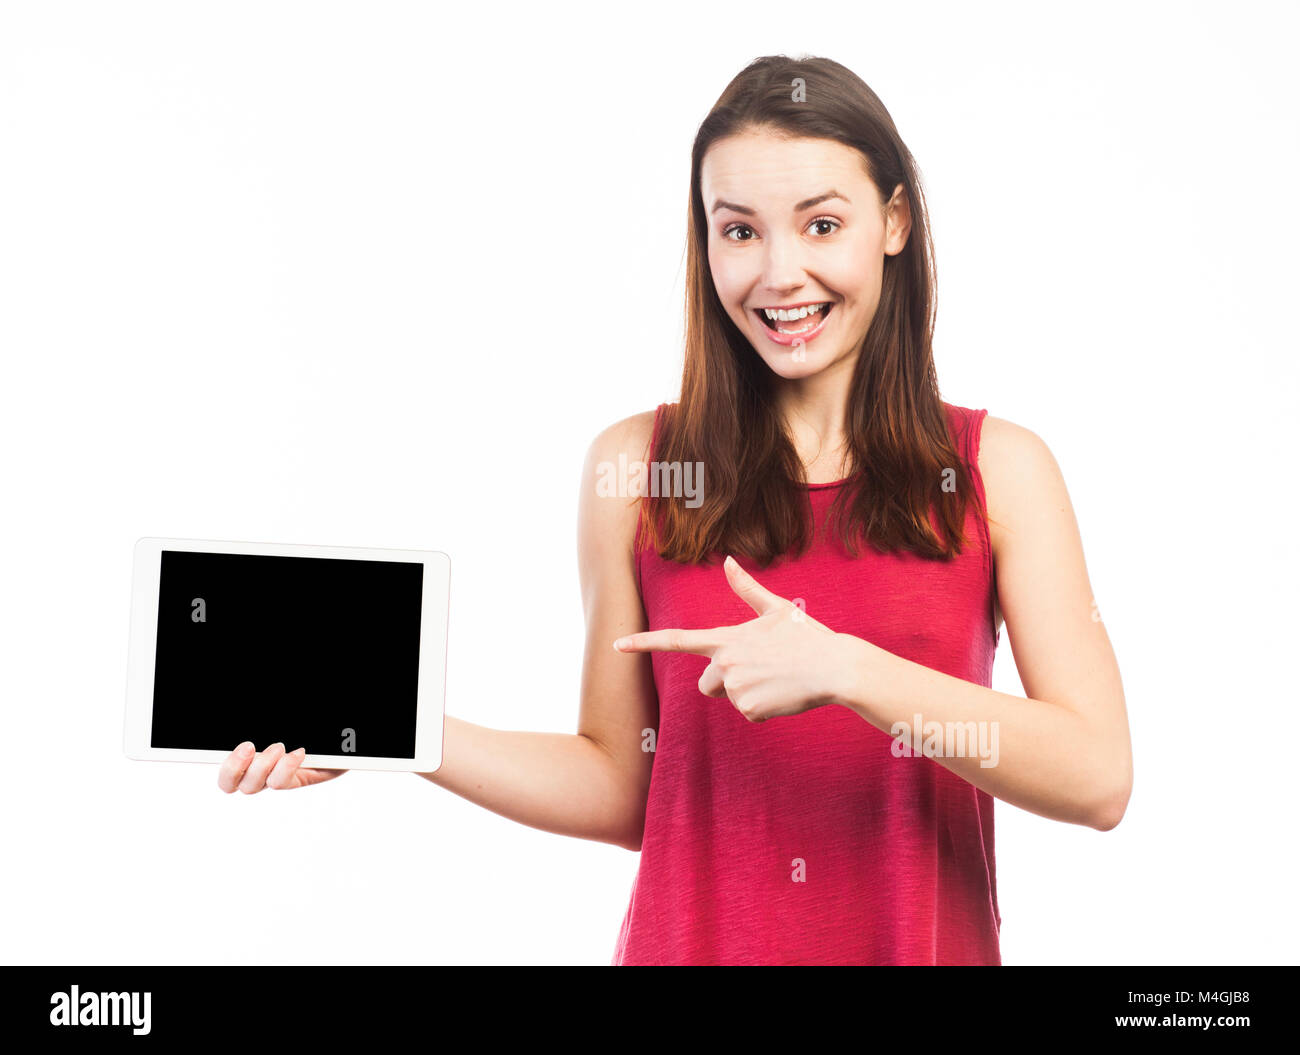 Linda mujer sosteniendo y mostrando la pantalla en blanco de una tableta electrónica, aislado en blanco Foto de stock